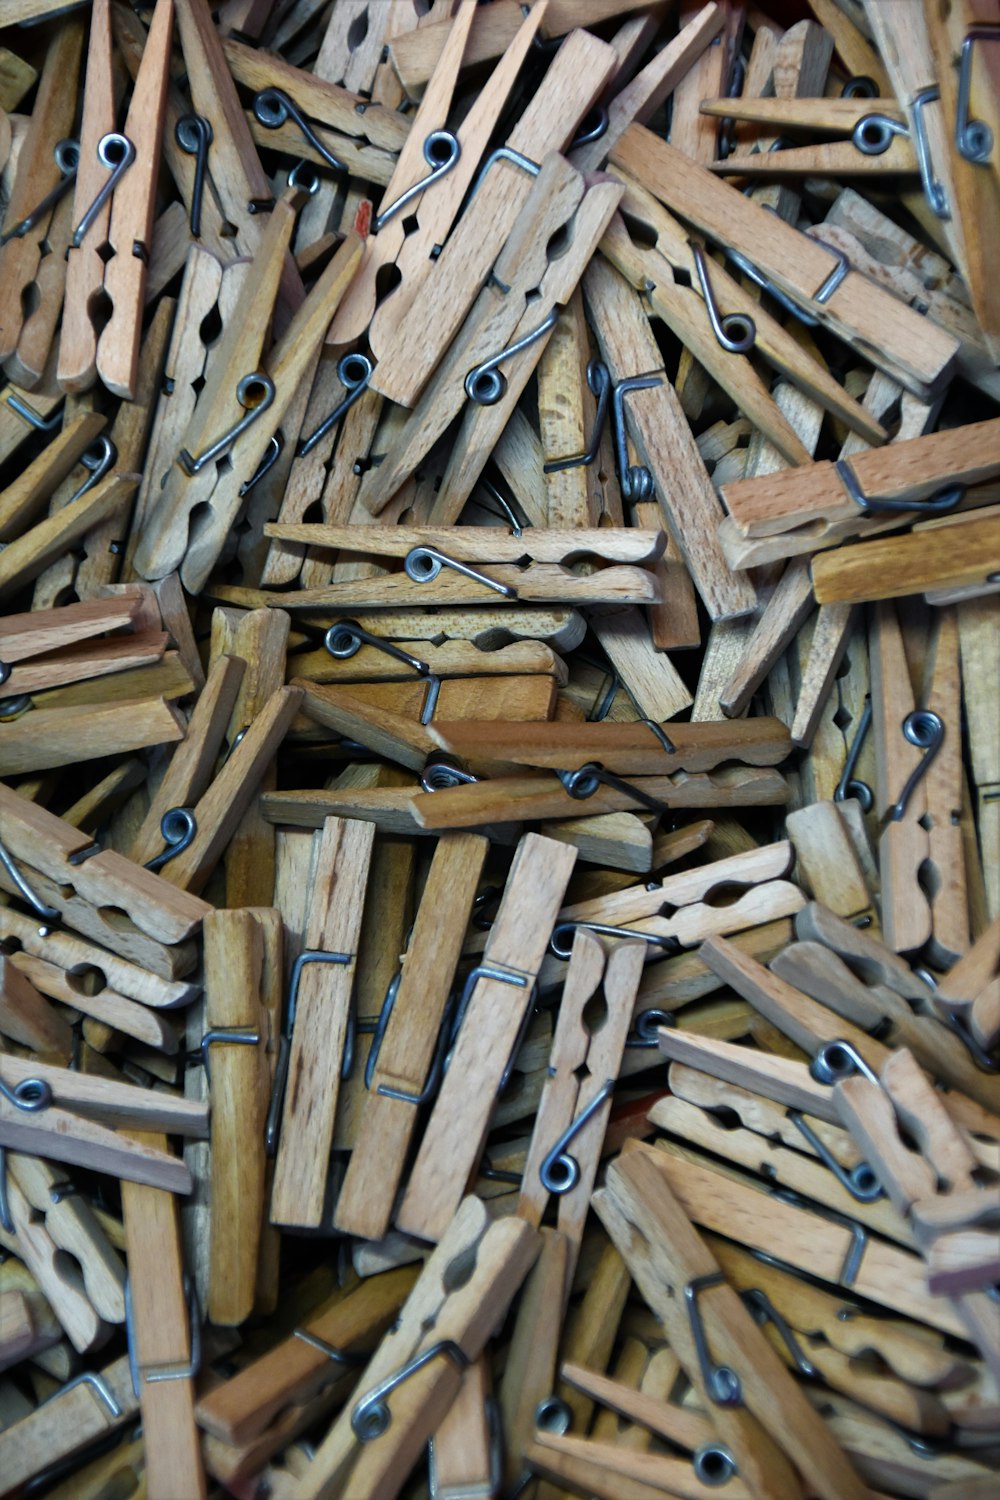 Affichage de lot de broche en tissu en bois brun